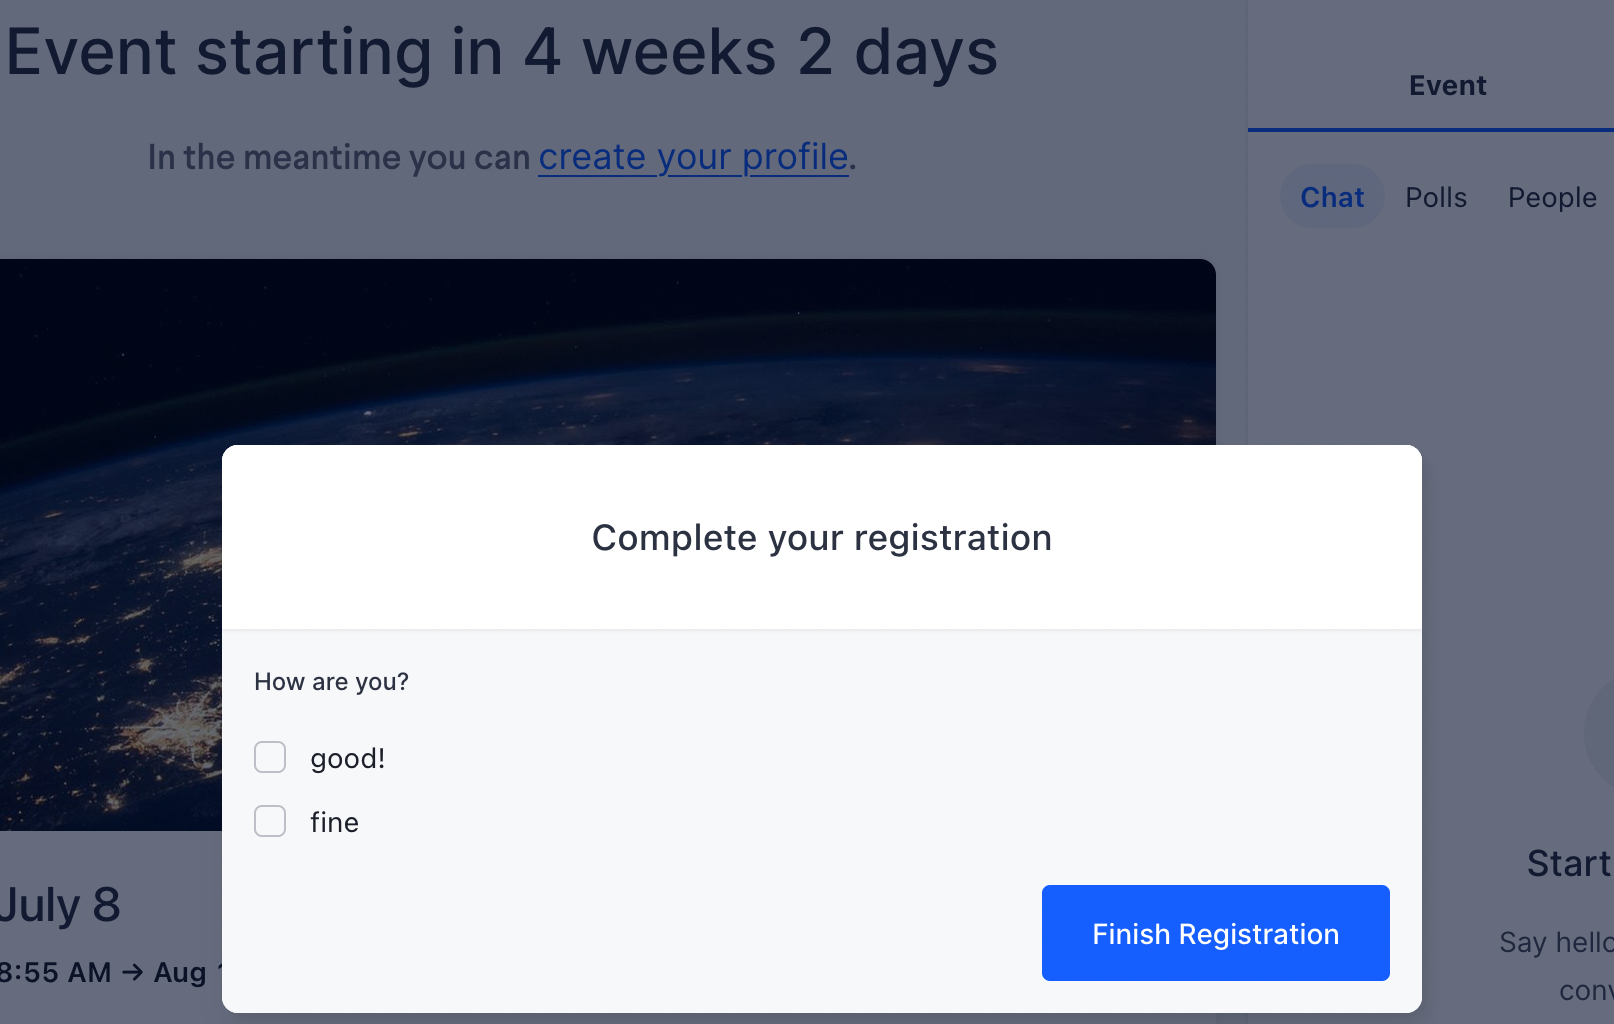 registration_form_in_event.png